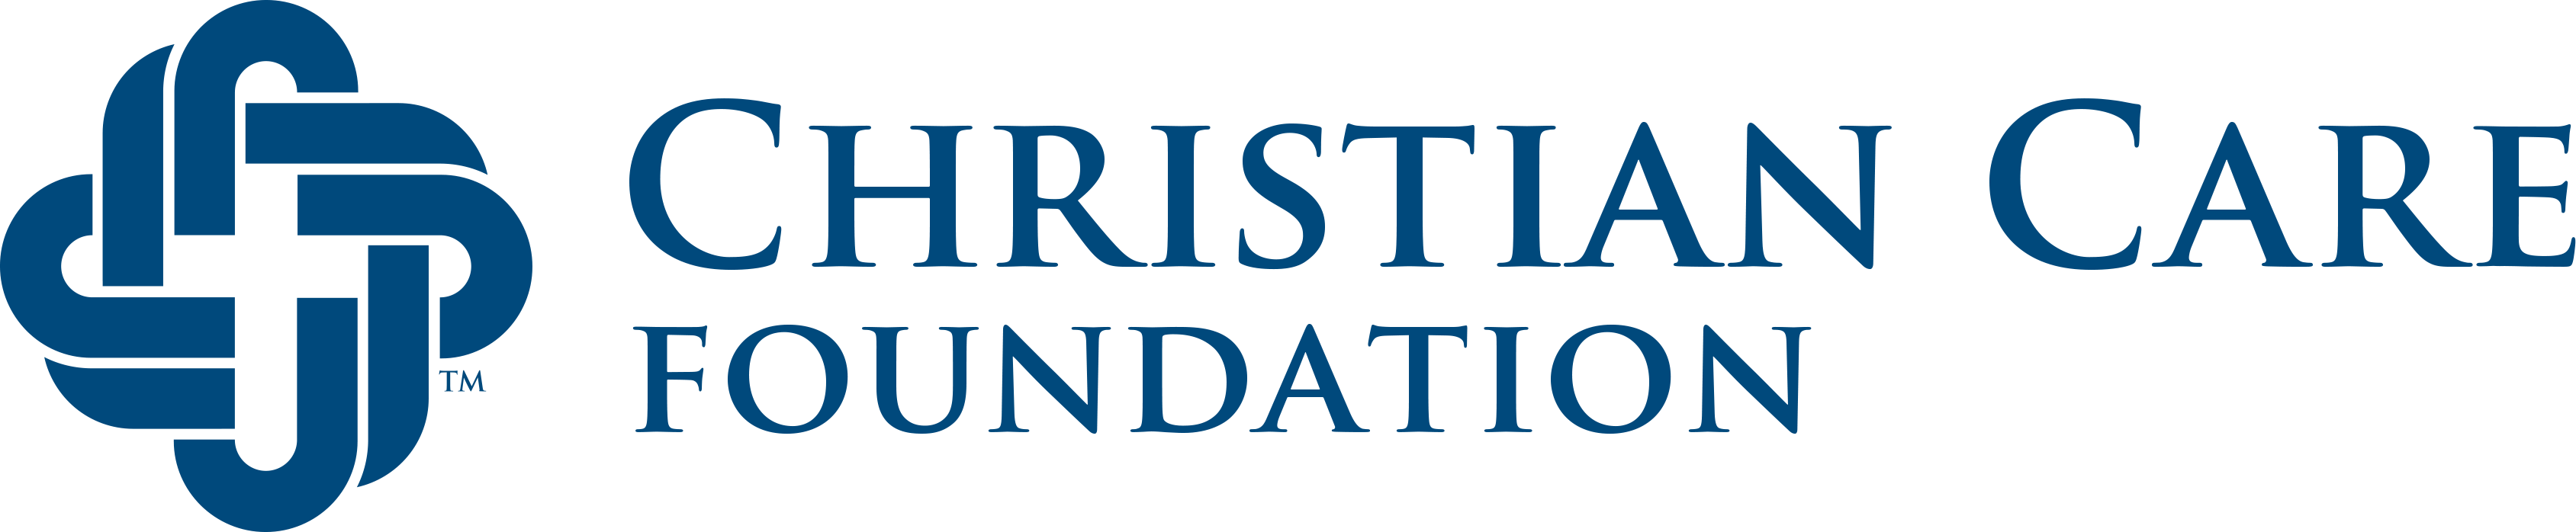 Christiancarefoundation Logo Typesetting Horizb